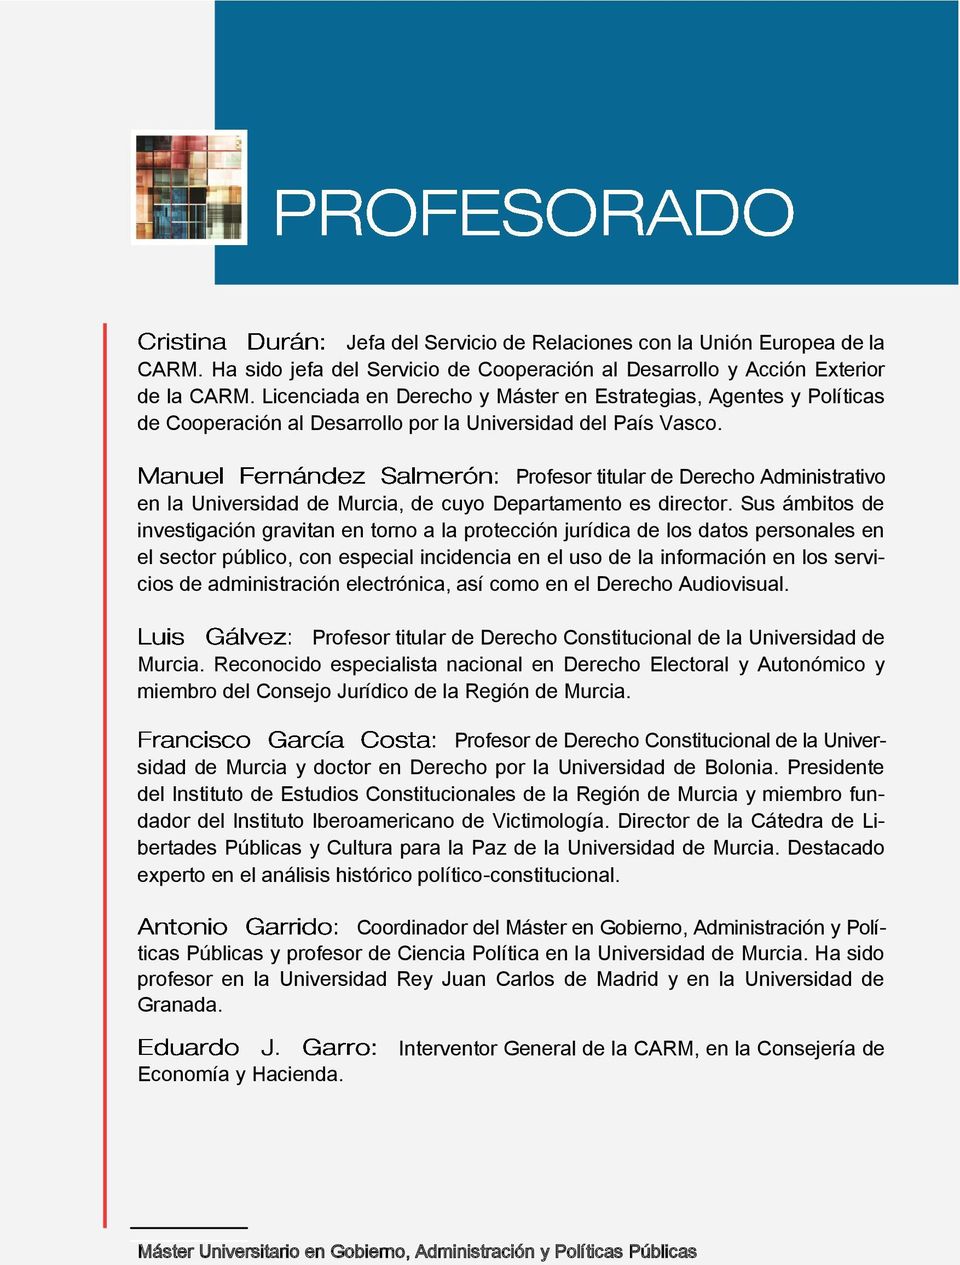 Profesor titular de Derecho Administrativo en la Universidad de Murcia, de cuyo Departamento es director.